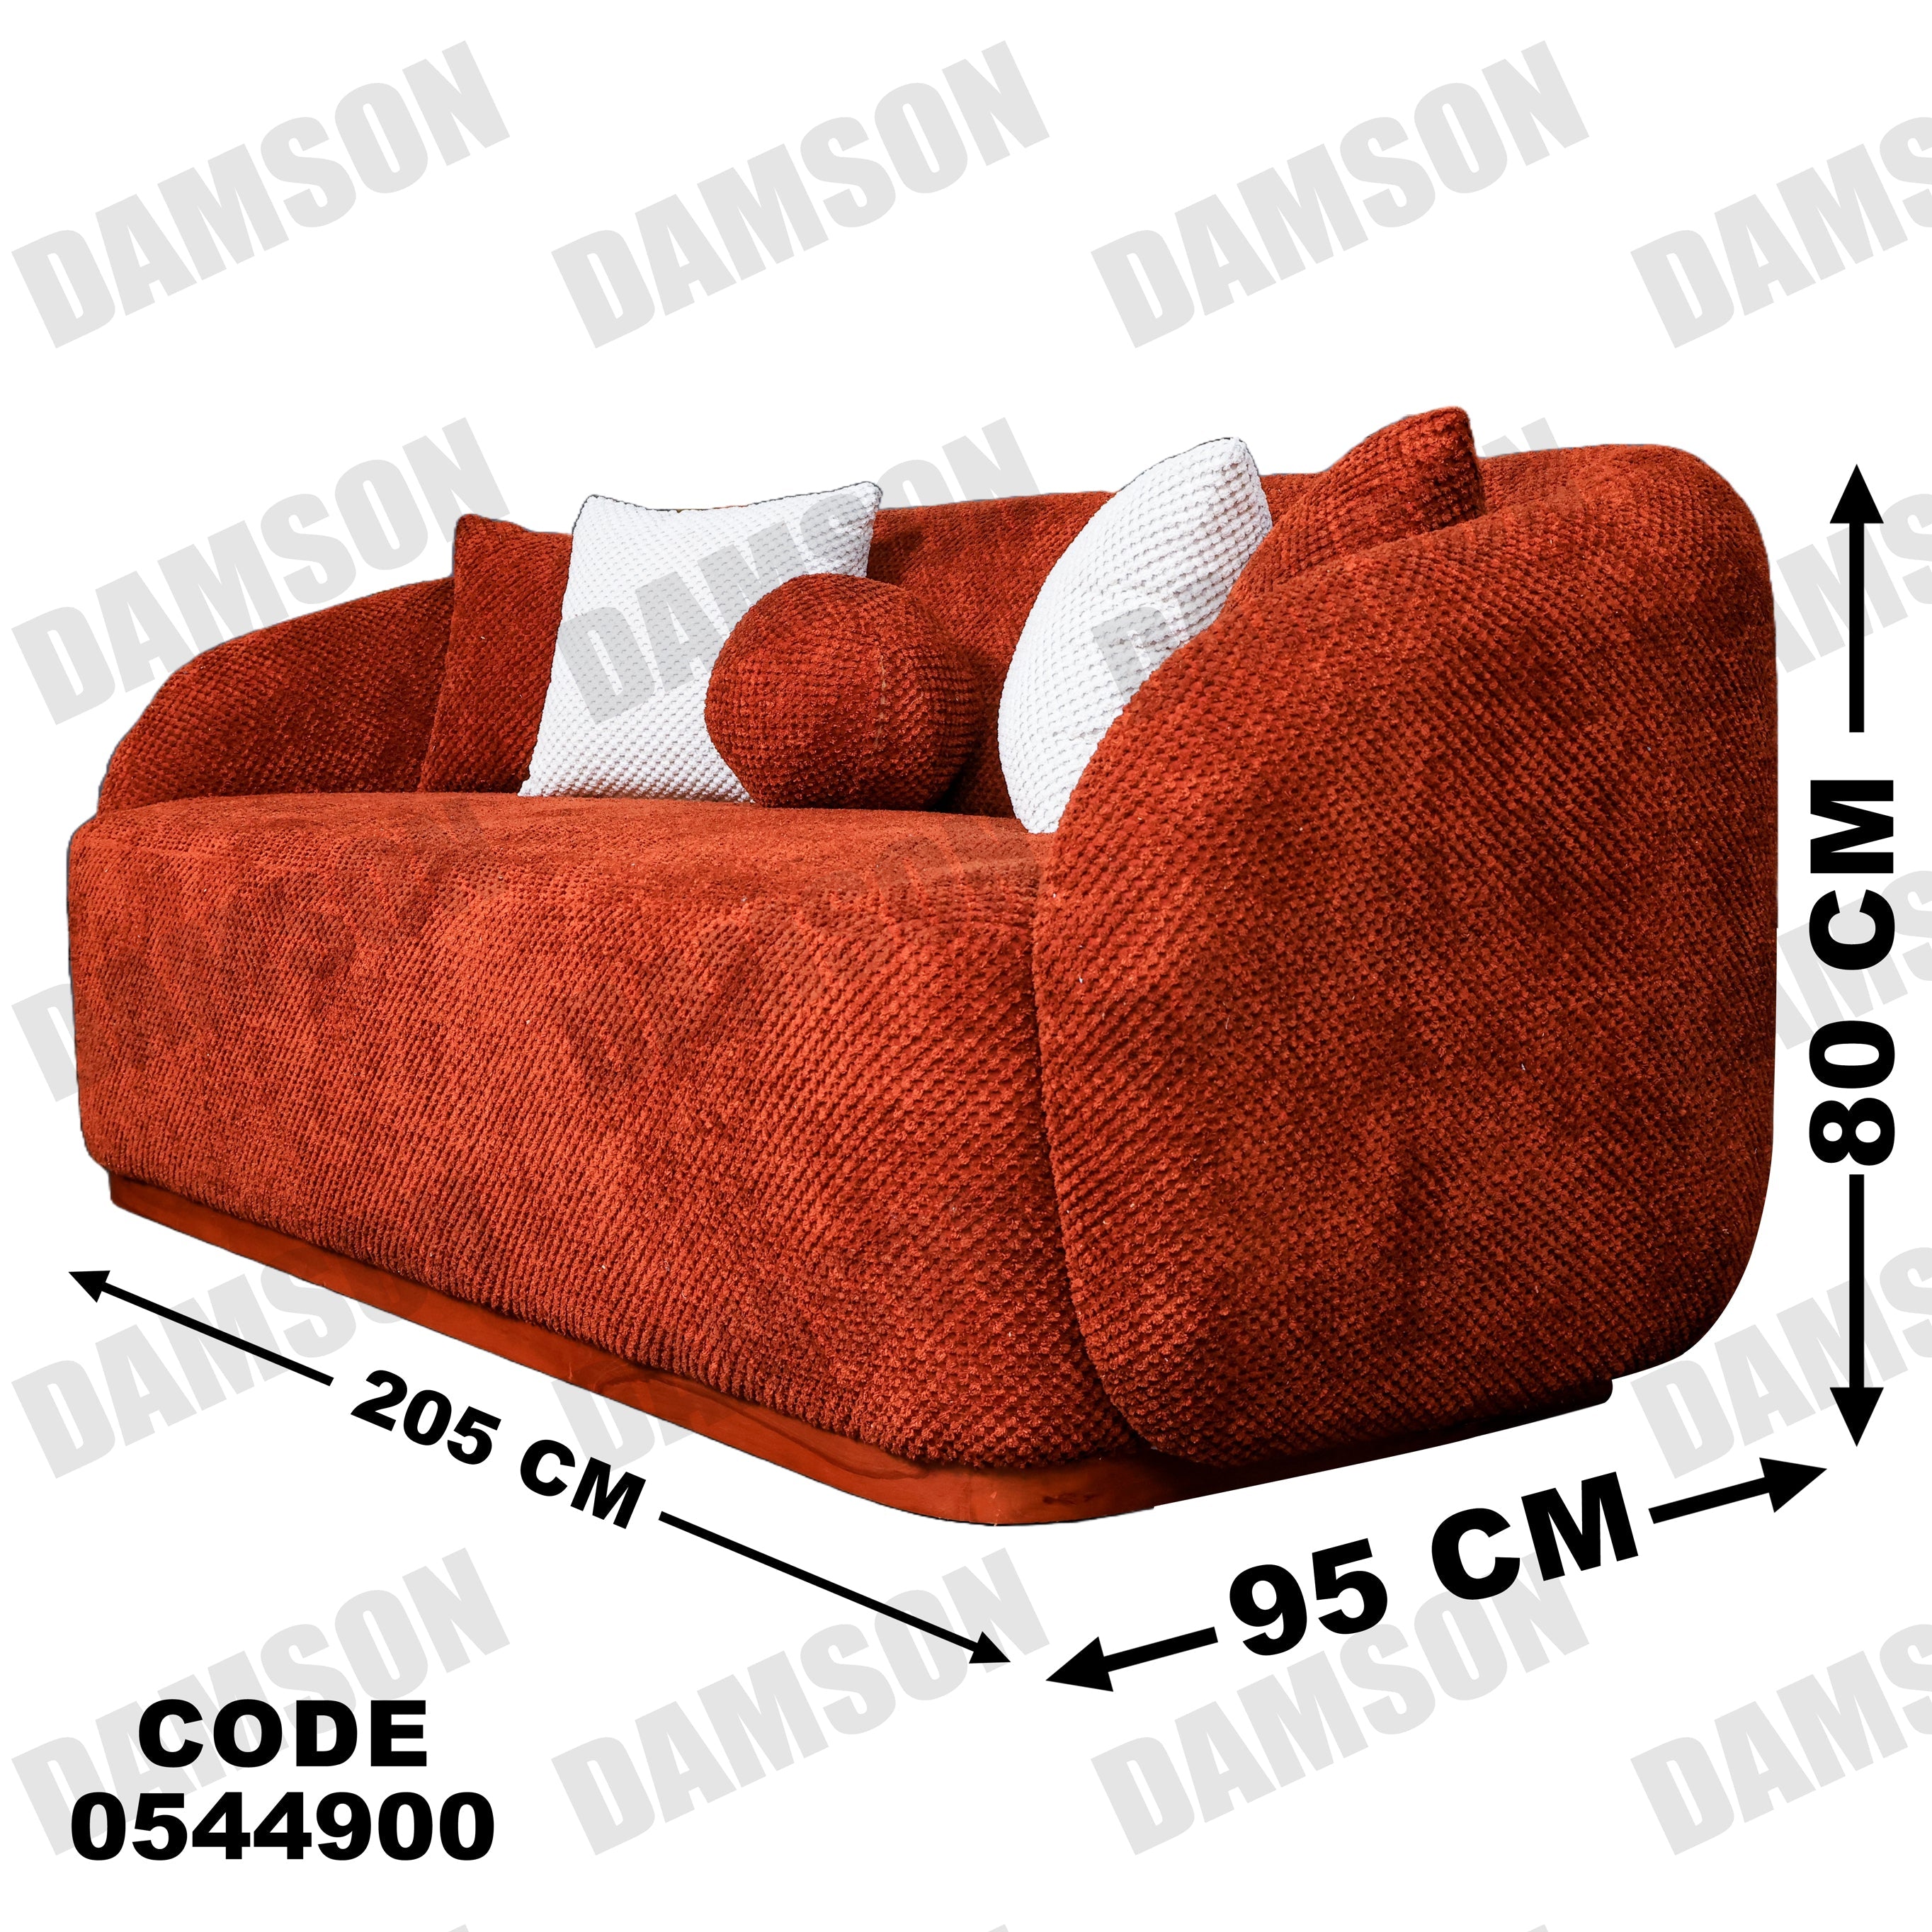 انترية 449 - Damson Furnitureانترية 449